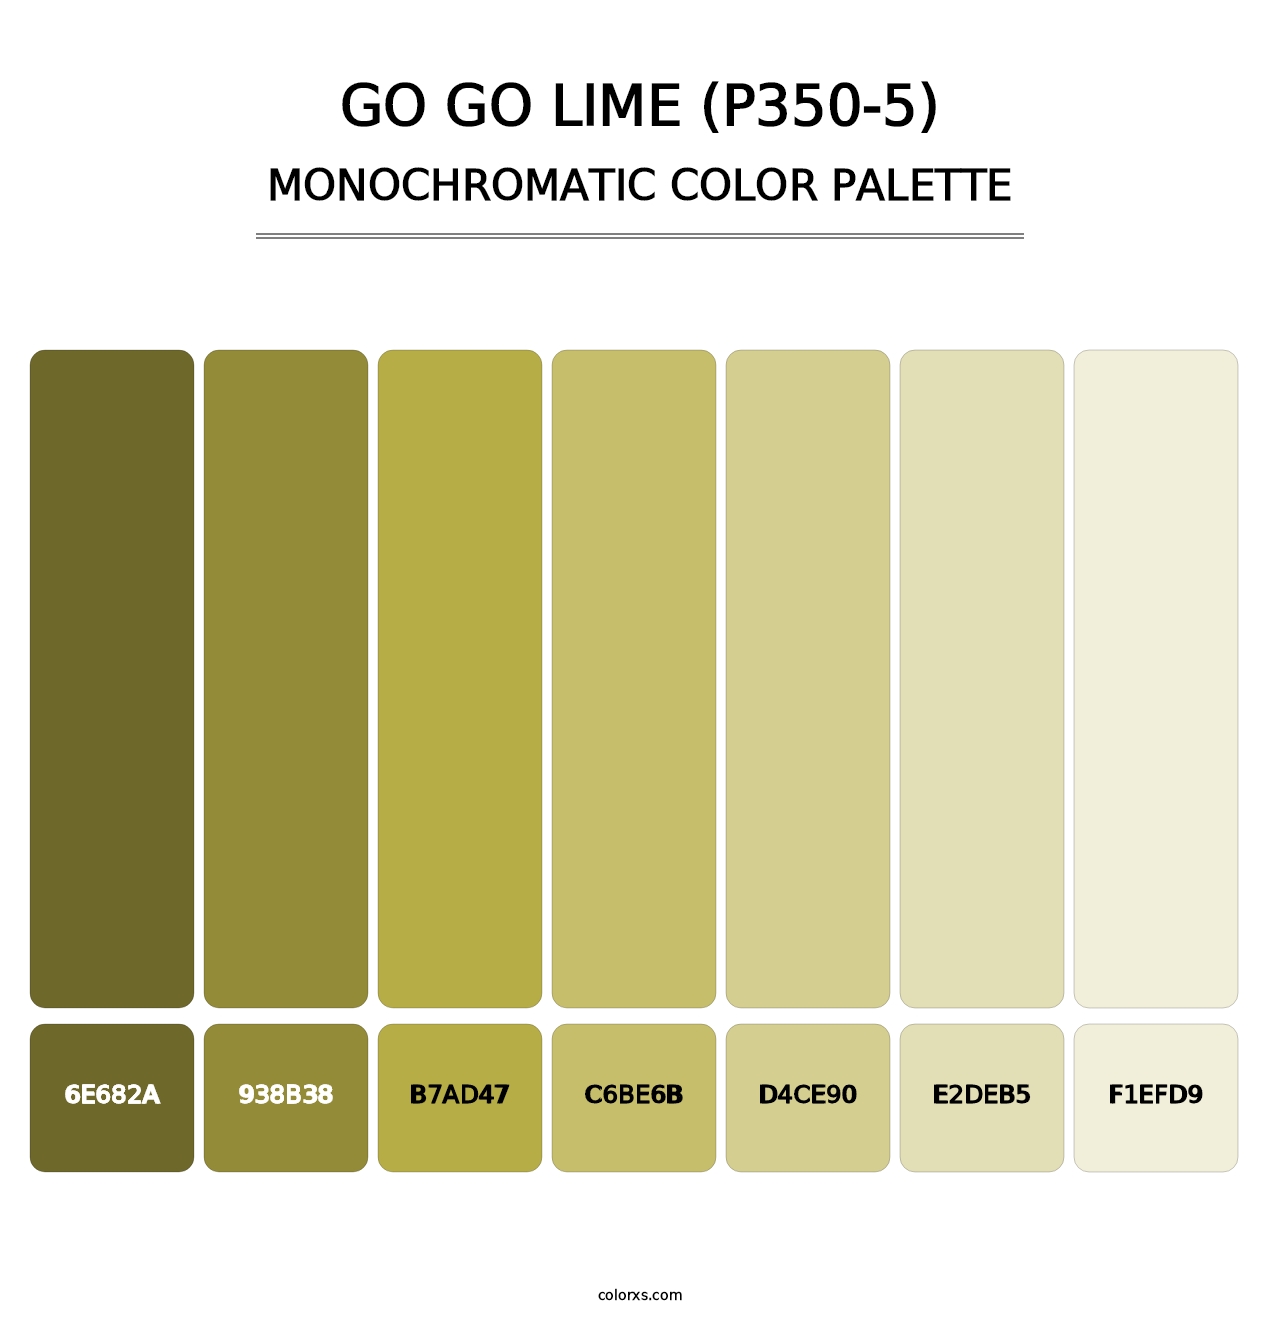 Go Go Lime (P350-5) - Monochromatic Color Palette